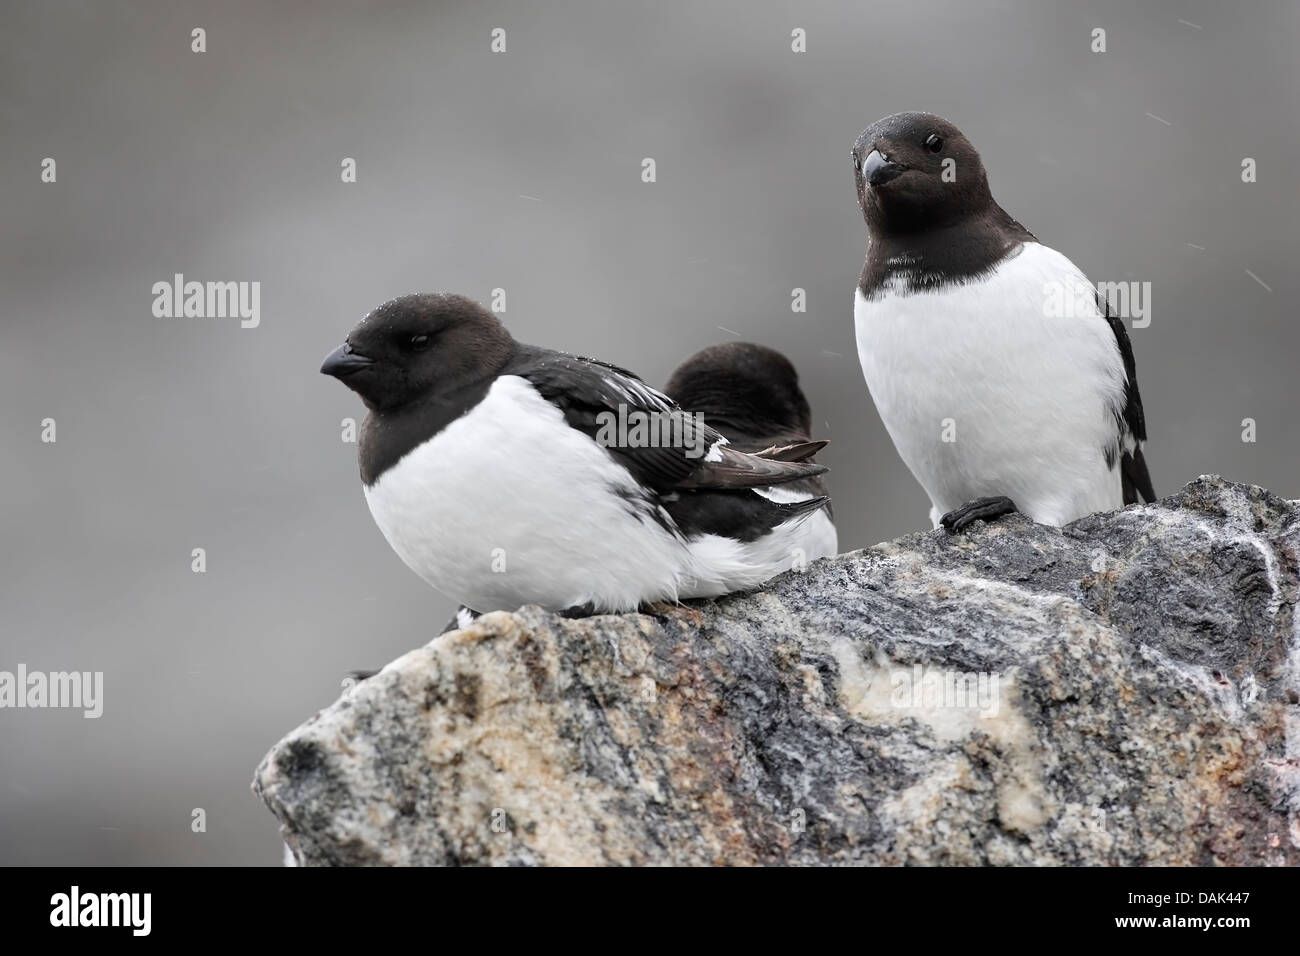 little uuk (Alle alle) group on rocks in rain, Fulglesongen, Spitzbergen, Svalbard, Arctic Stock Photo